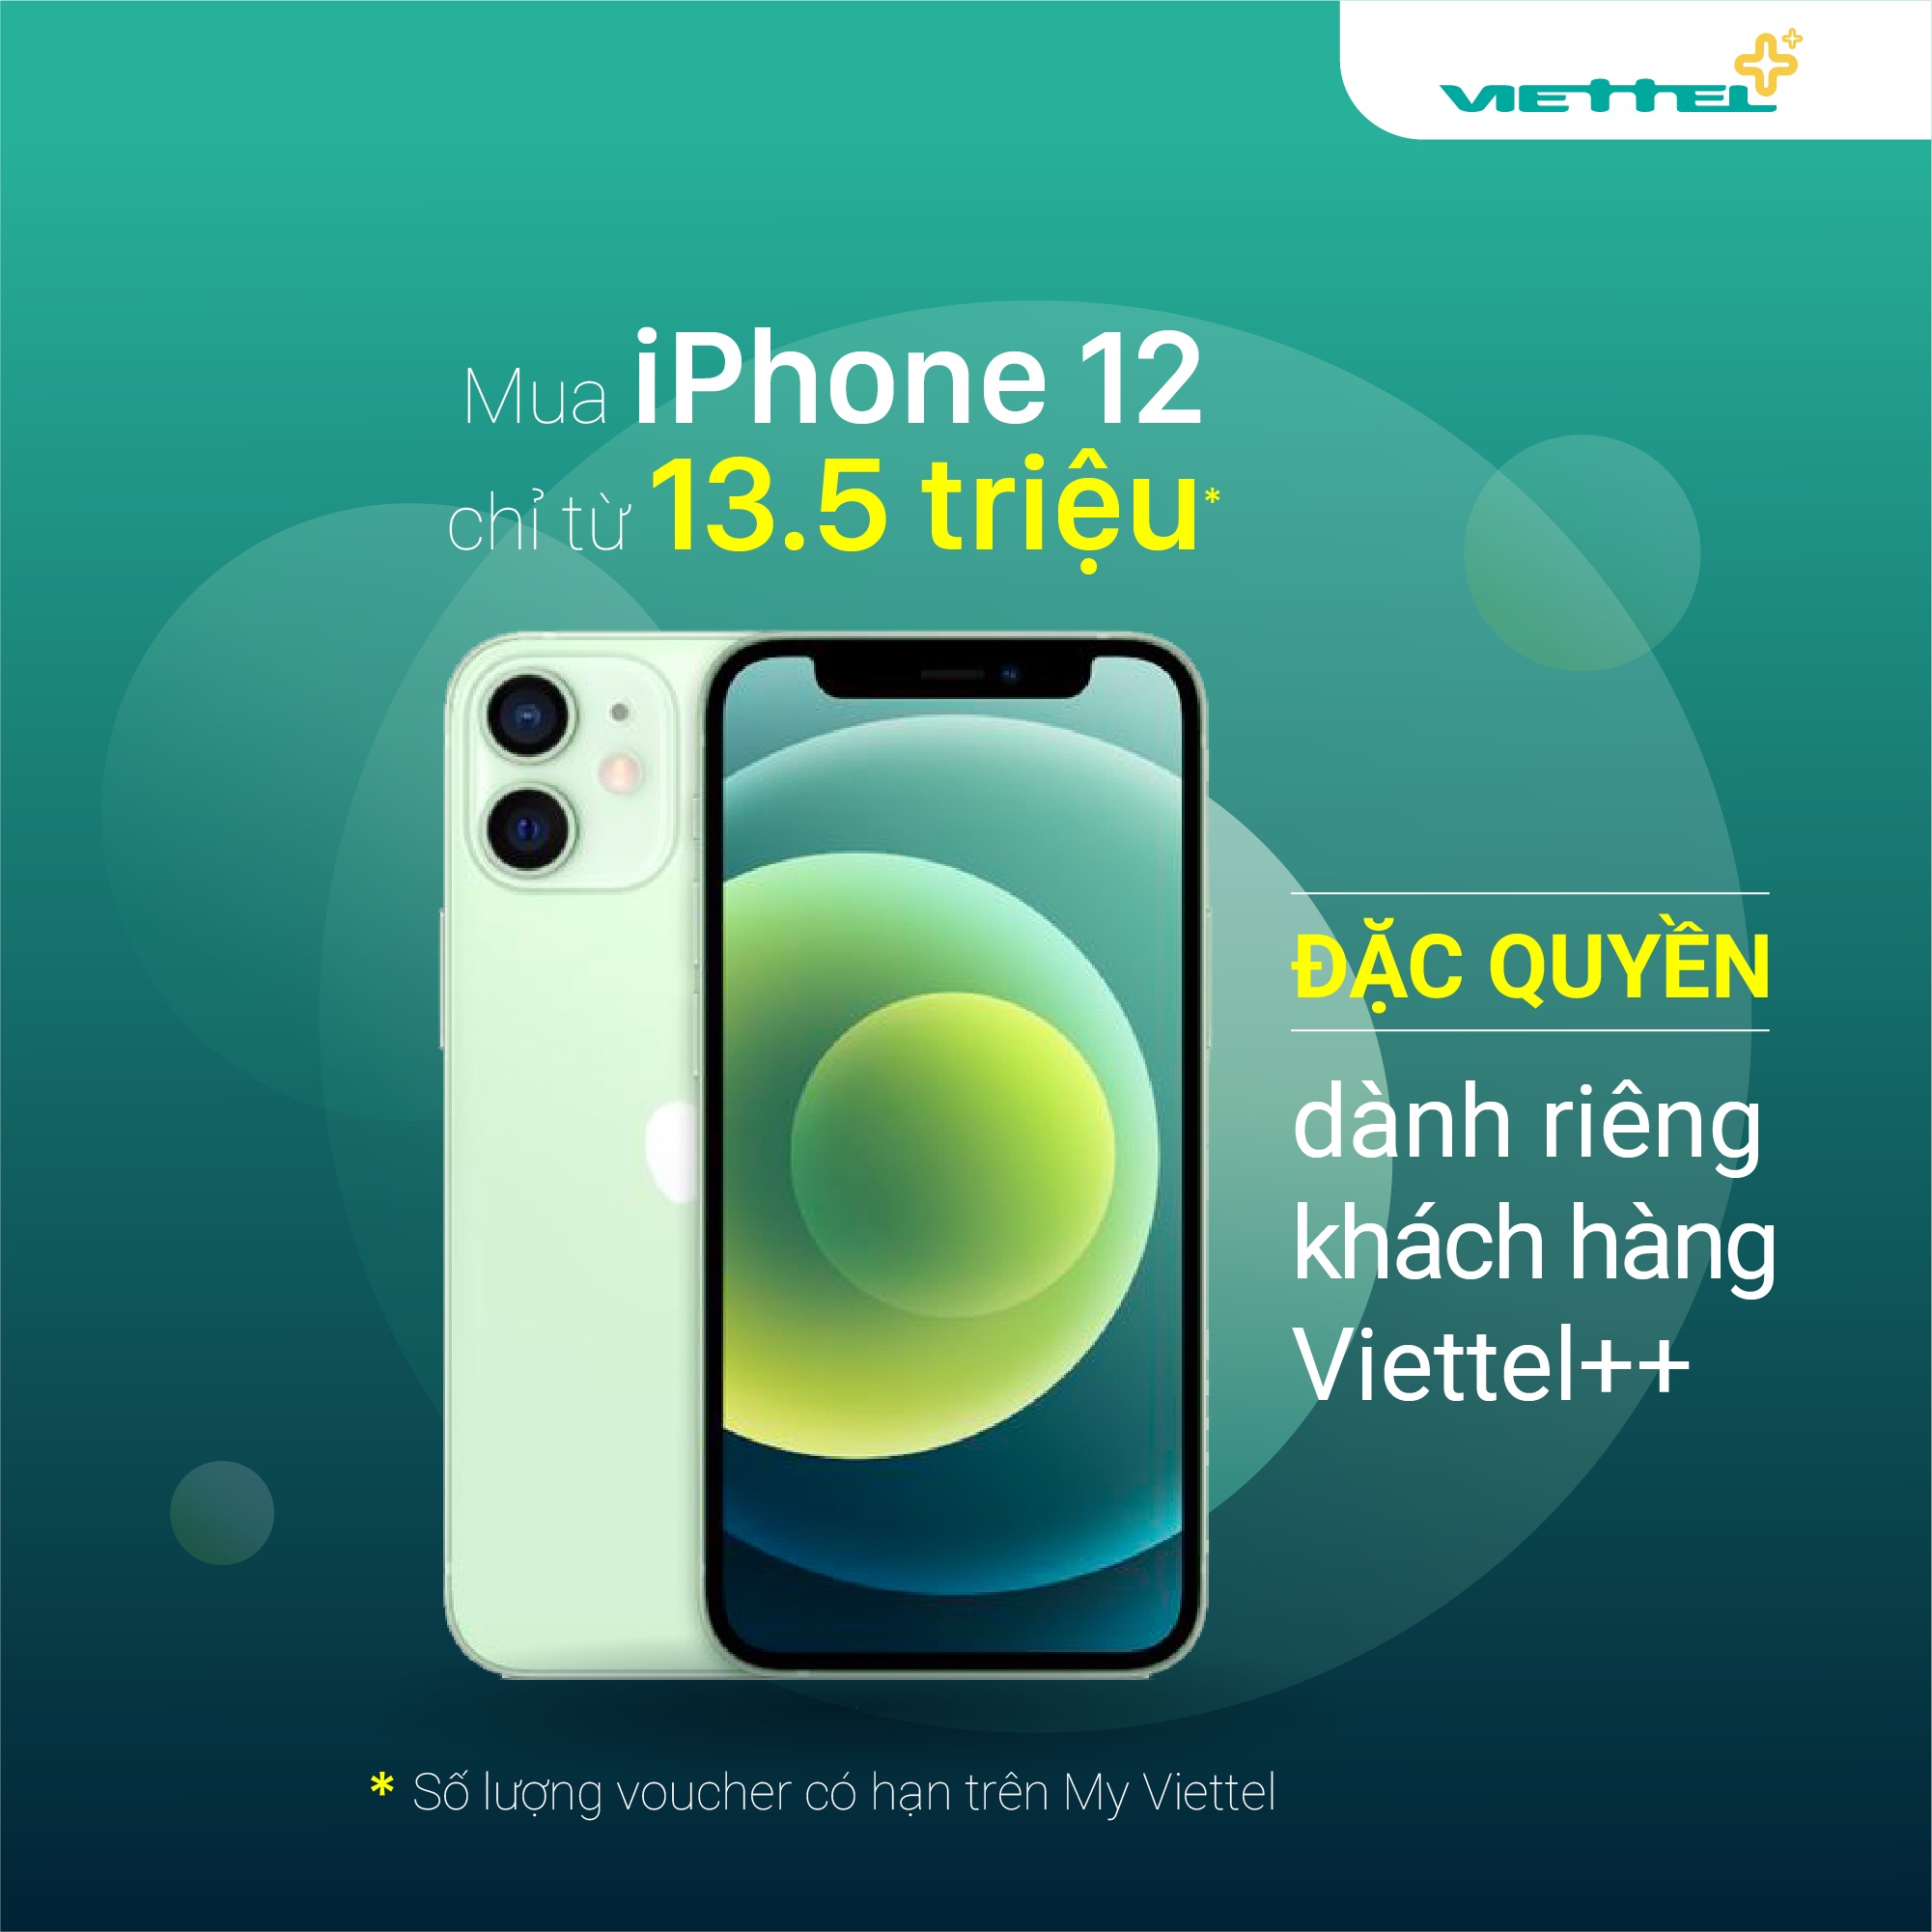 Anh Em Đang Xài Viettel++ Sẽ Được Mua Iphone 12 Chỉ Từ 13.5 Triệu Đồng!